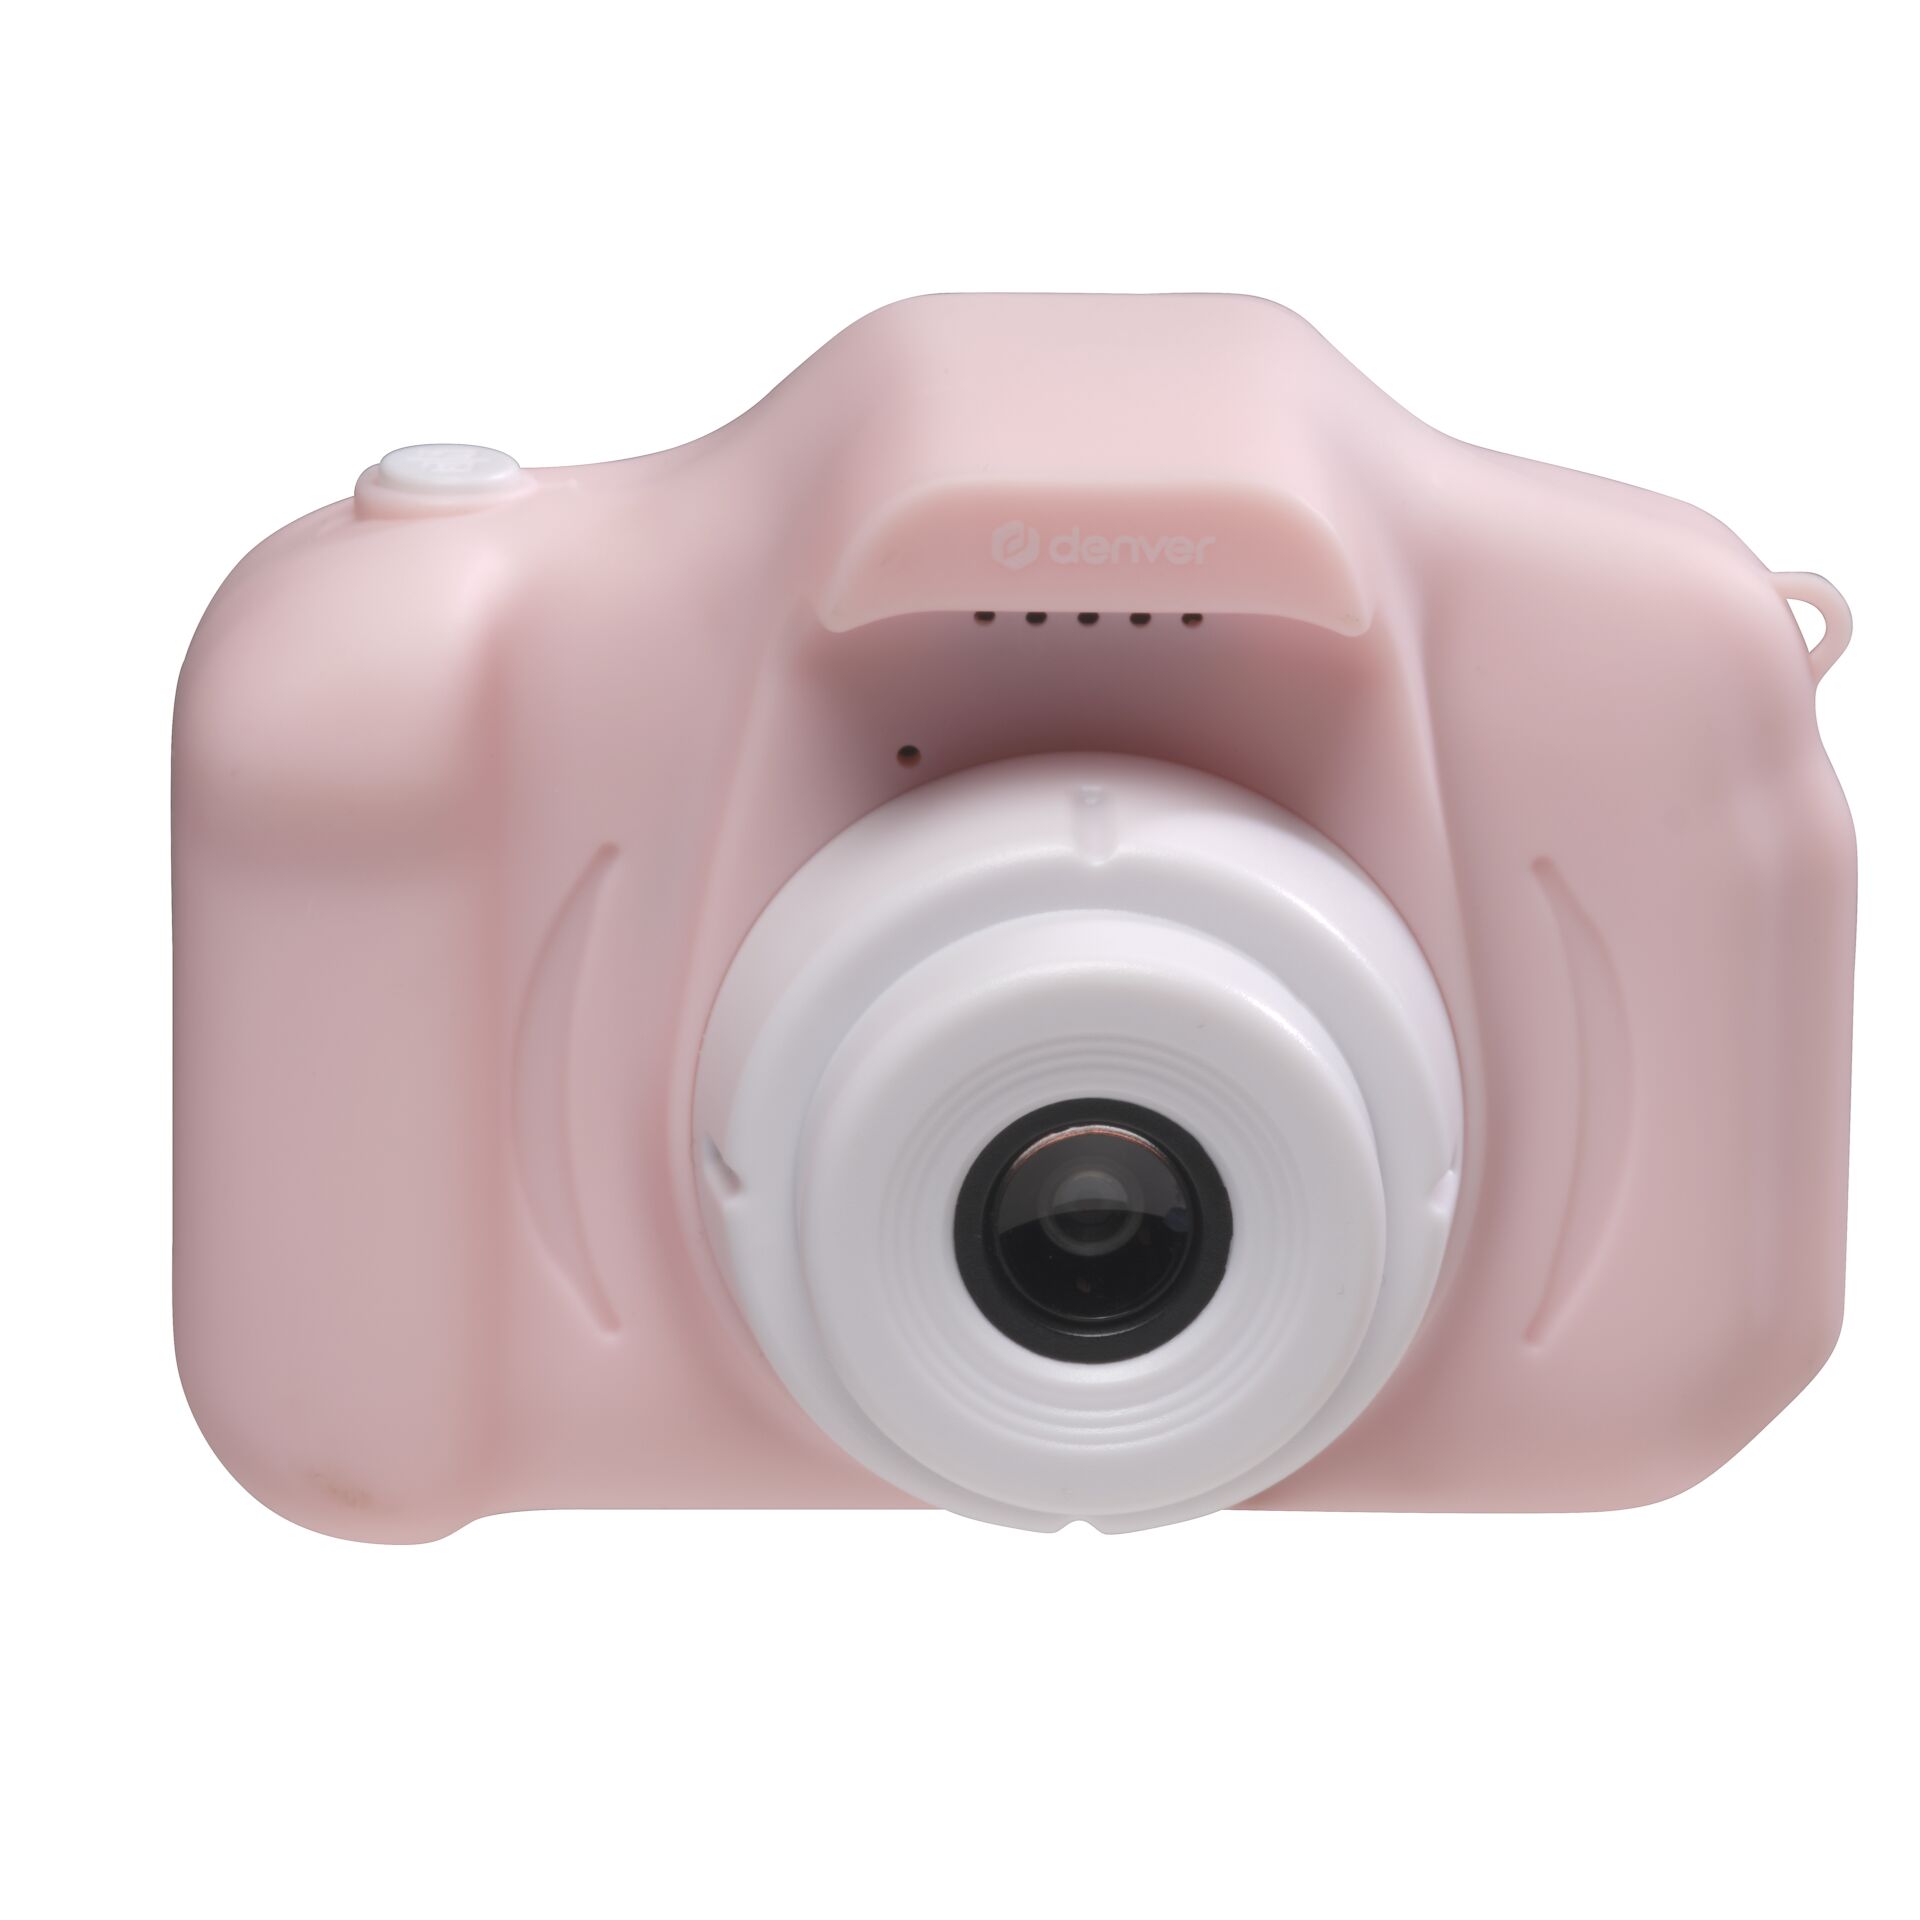 Denver KCA-1340 Kids camera pink